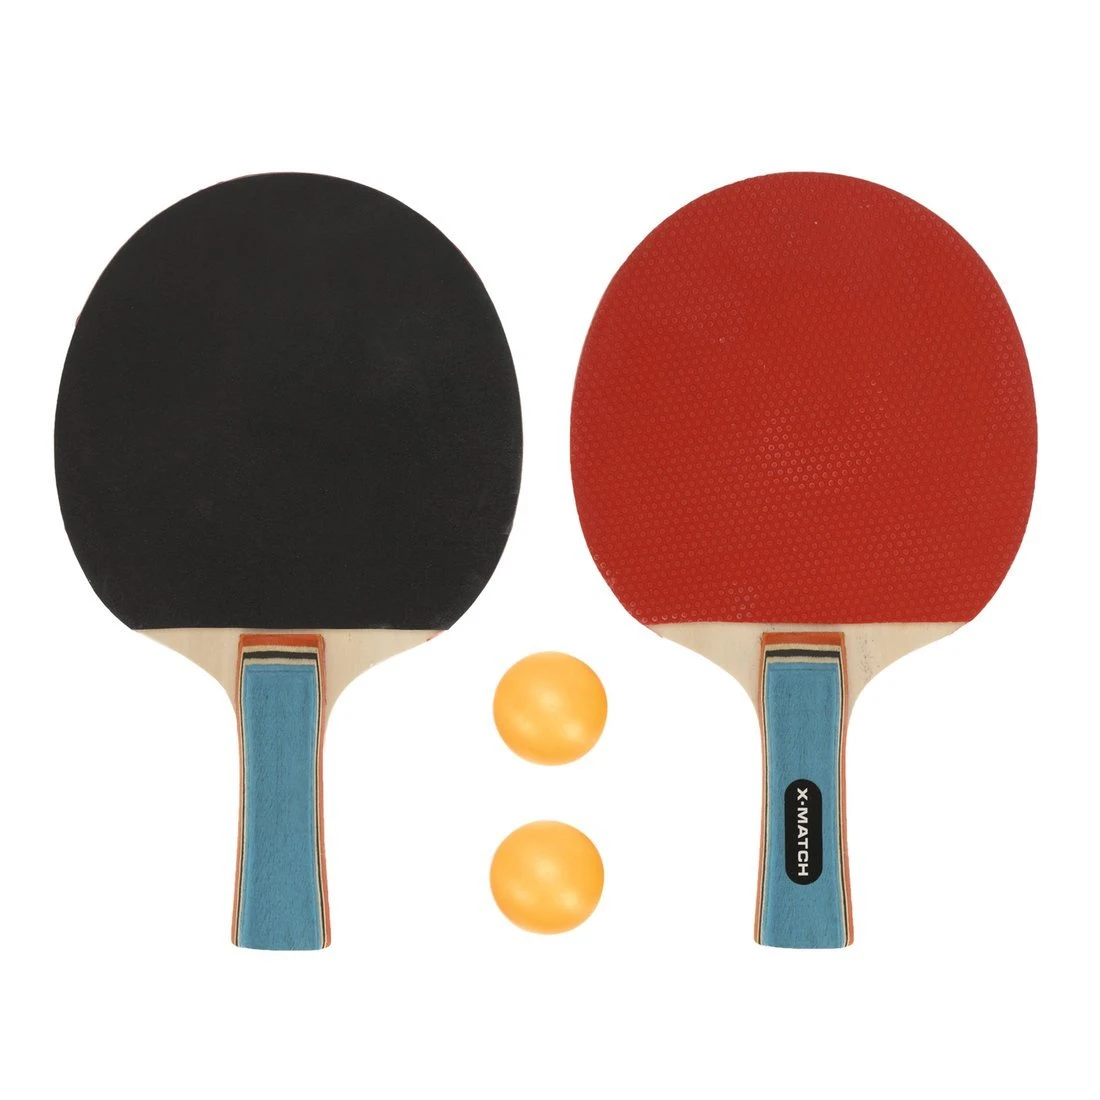 Набор для настольного тенниса, комплектность: 2 ракетки 8 мм., 2 шарика